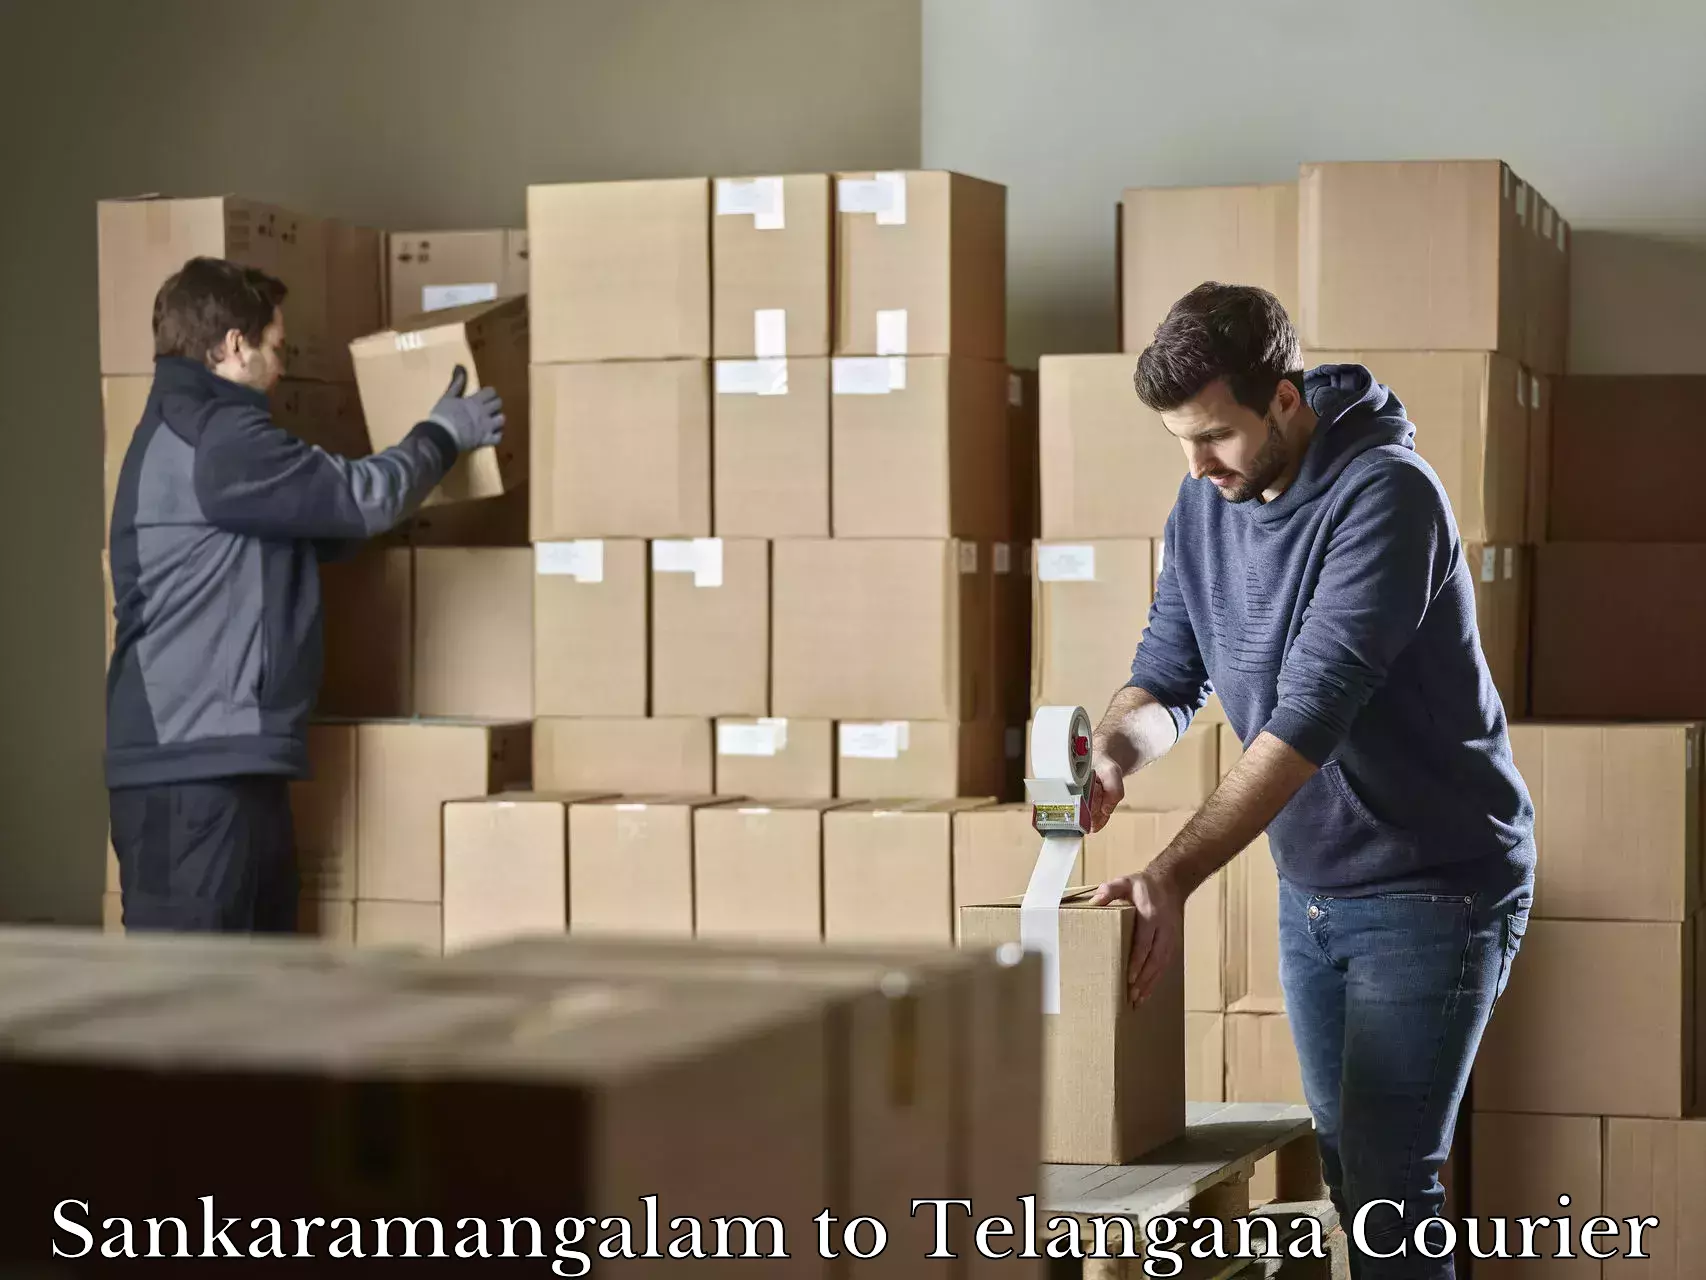 Luggage transport company Sankaramangalam to Eligedu